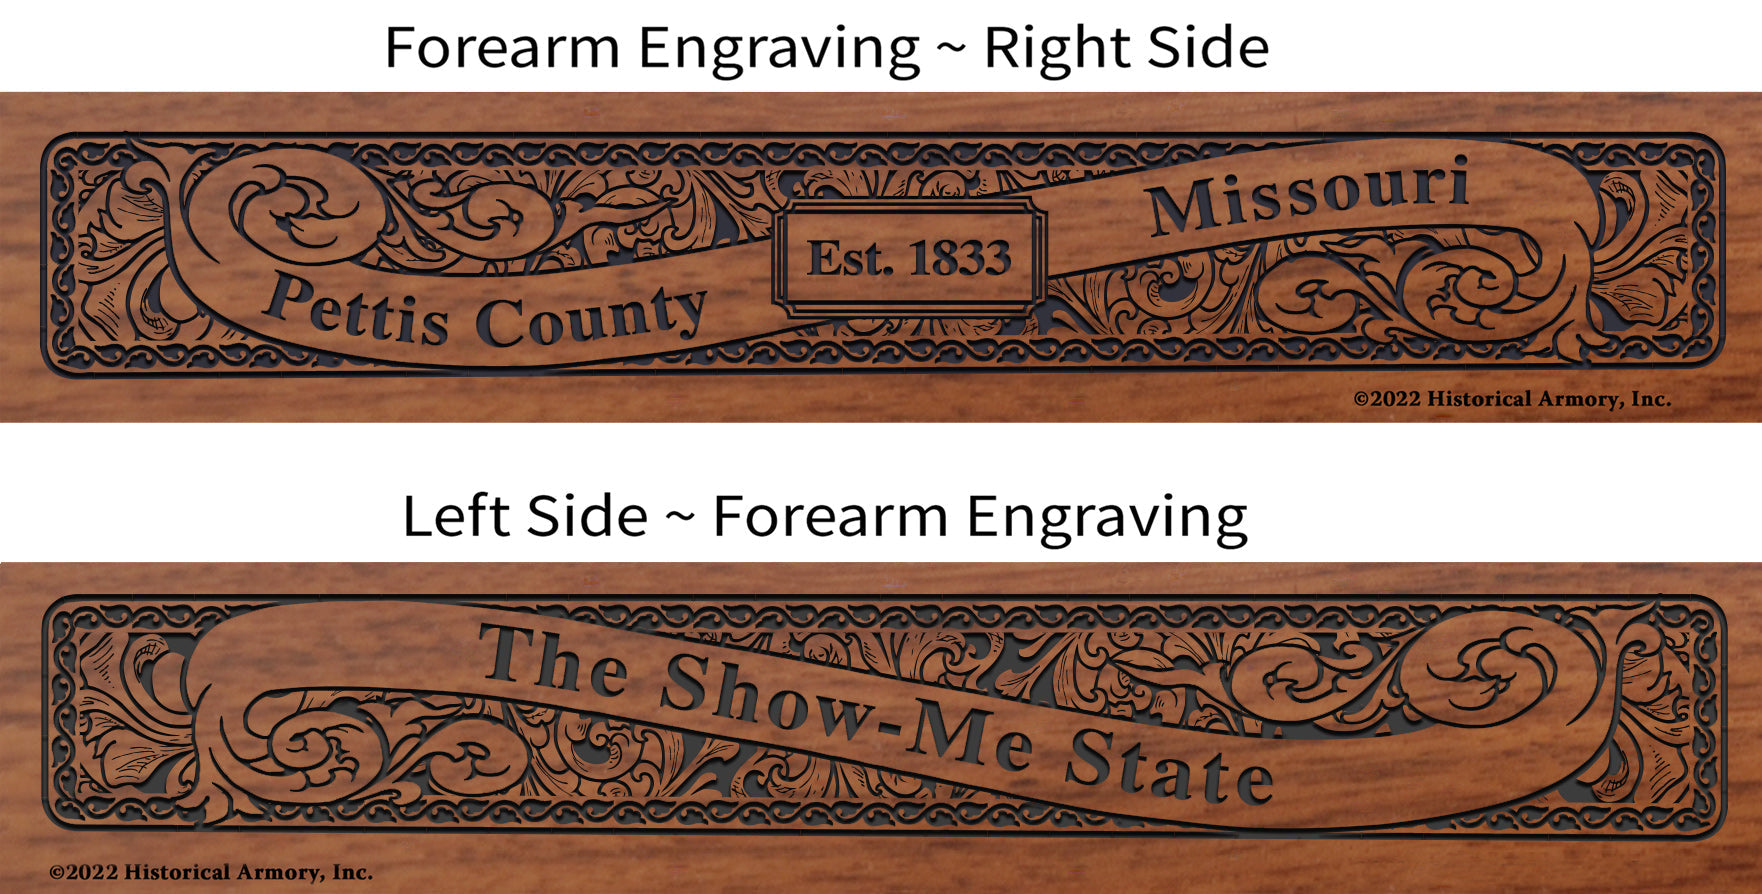 Pettis County Missouri Engraved Rifle Forearm